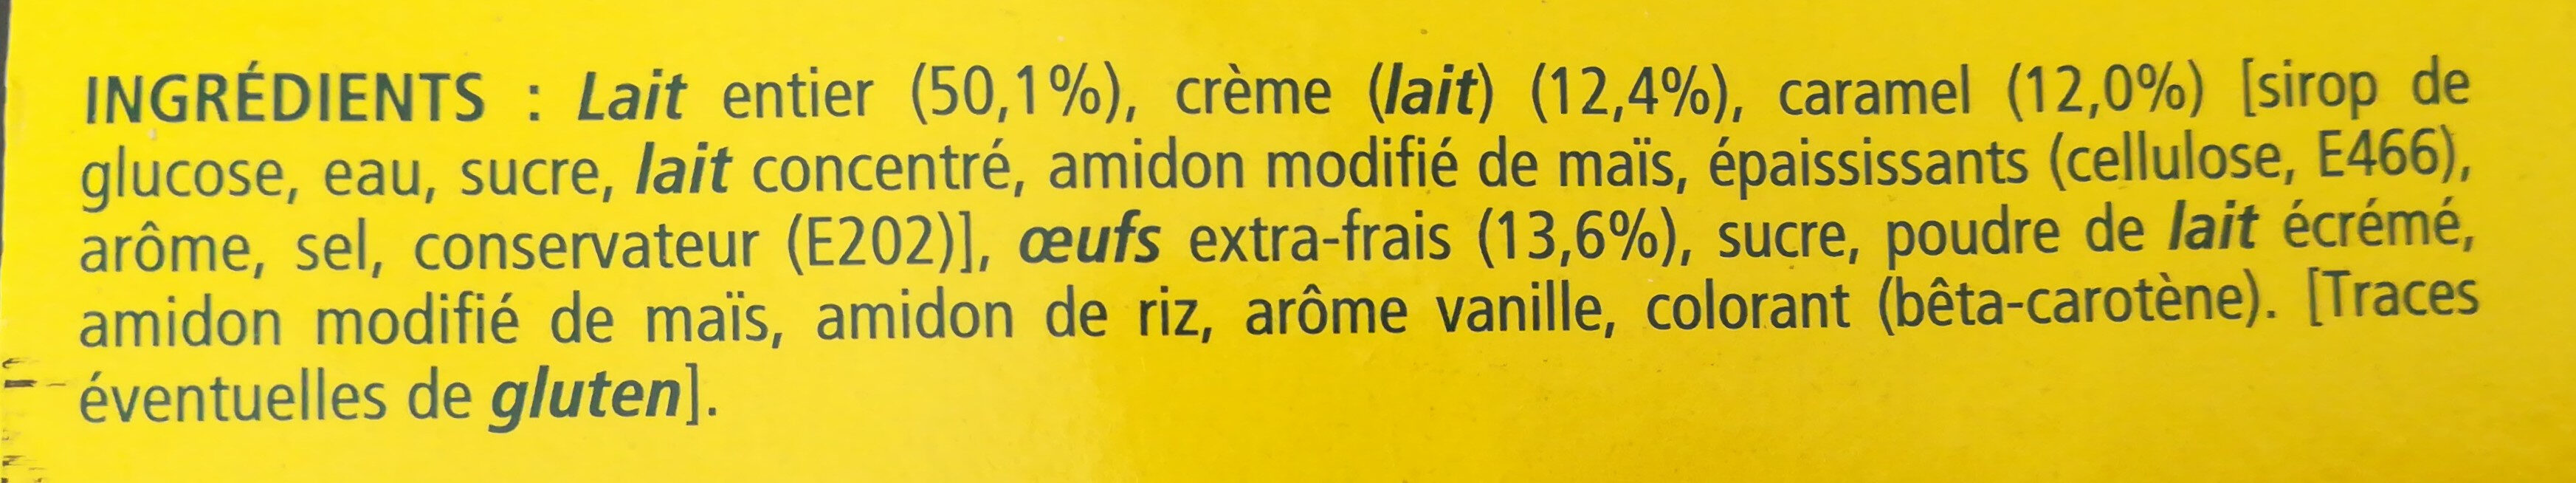 Crème aux oeufs sur lit de caramel - Ingredients - fr